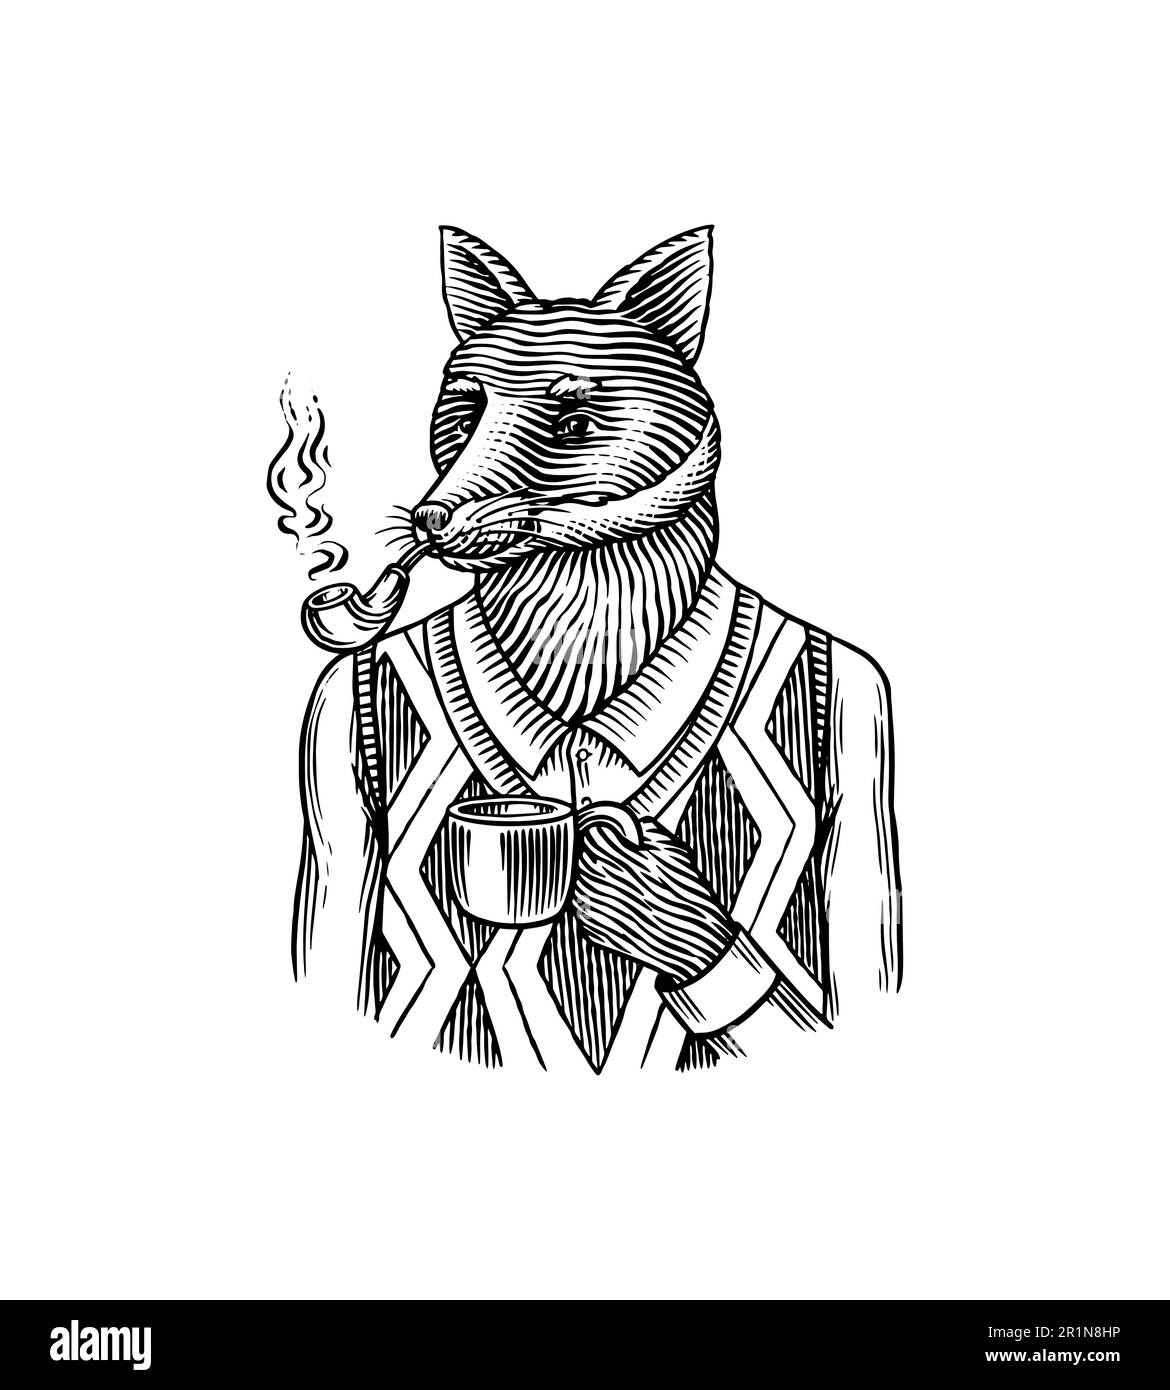 Personaggio Fox in tuta. Uomo di moda in un gilet con un tubo fumante e una tazza di caffè. Animale in retrò Abbigliamento. Stile di incisione vintage. Disegnato a mano Illustrazione Vettoriale